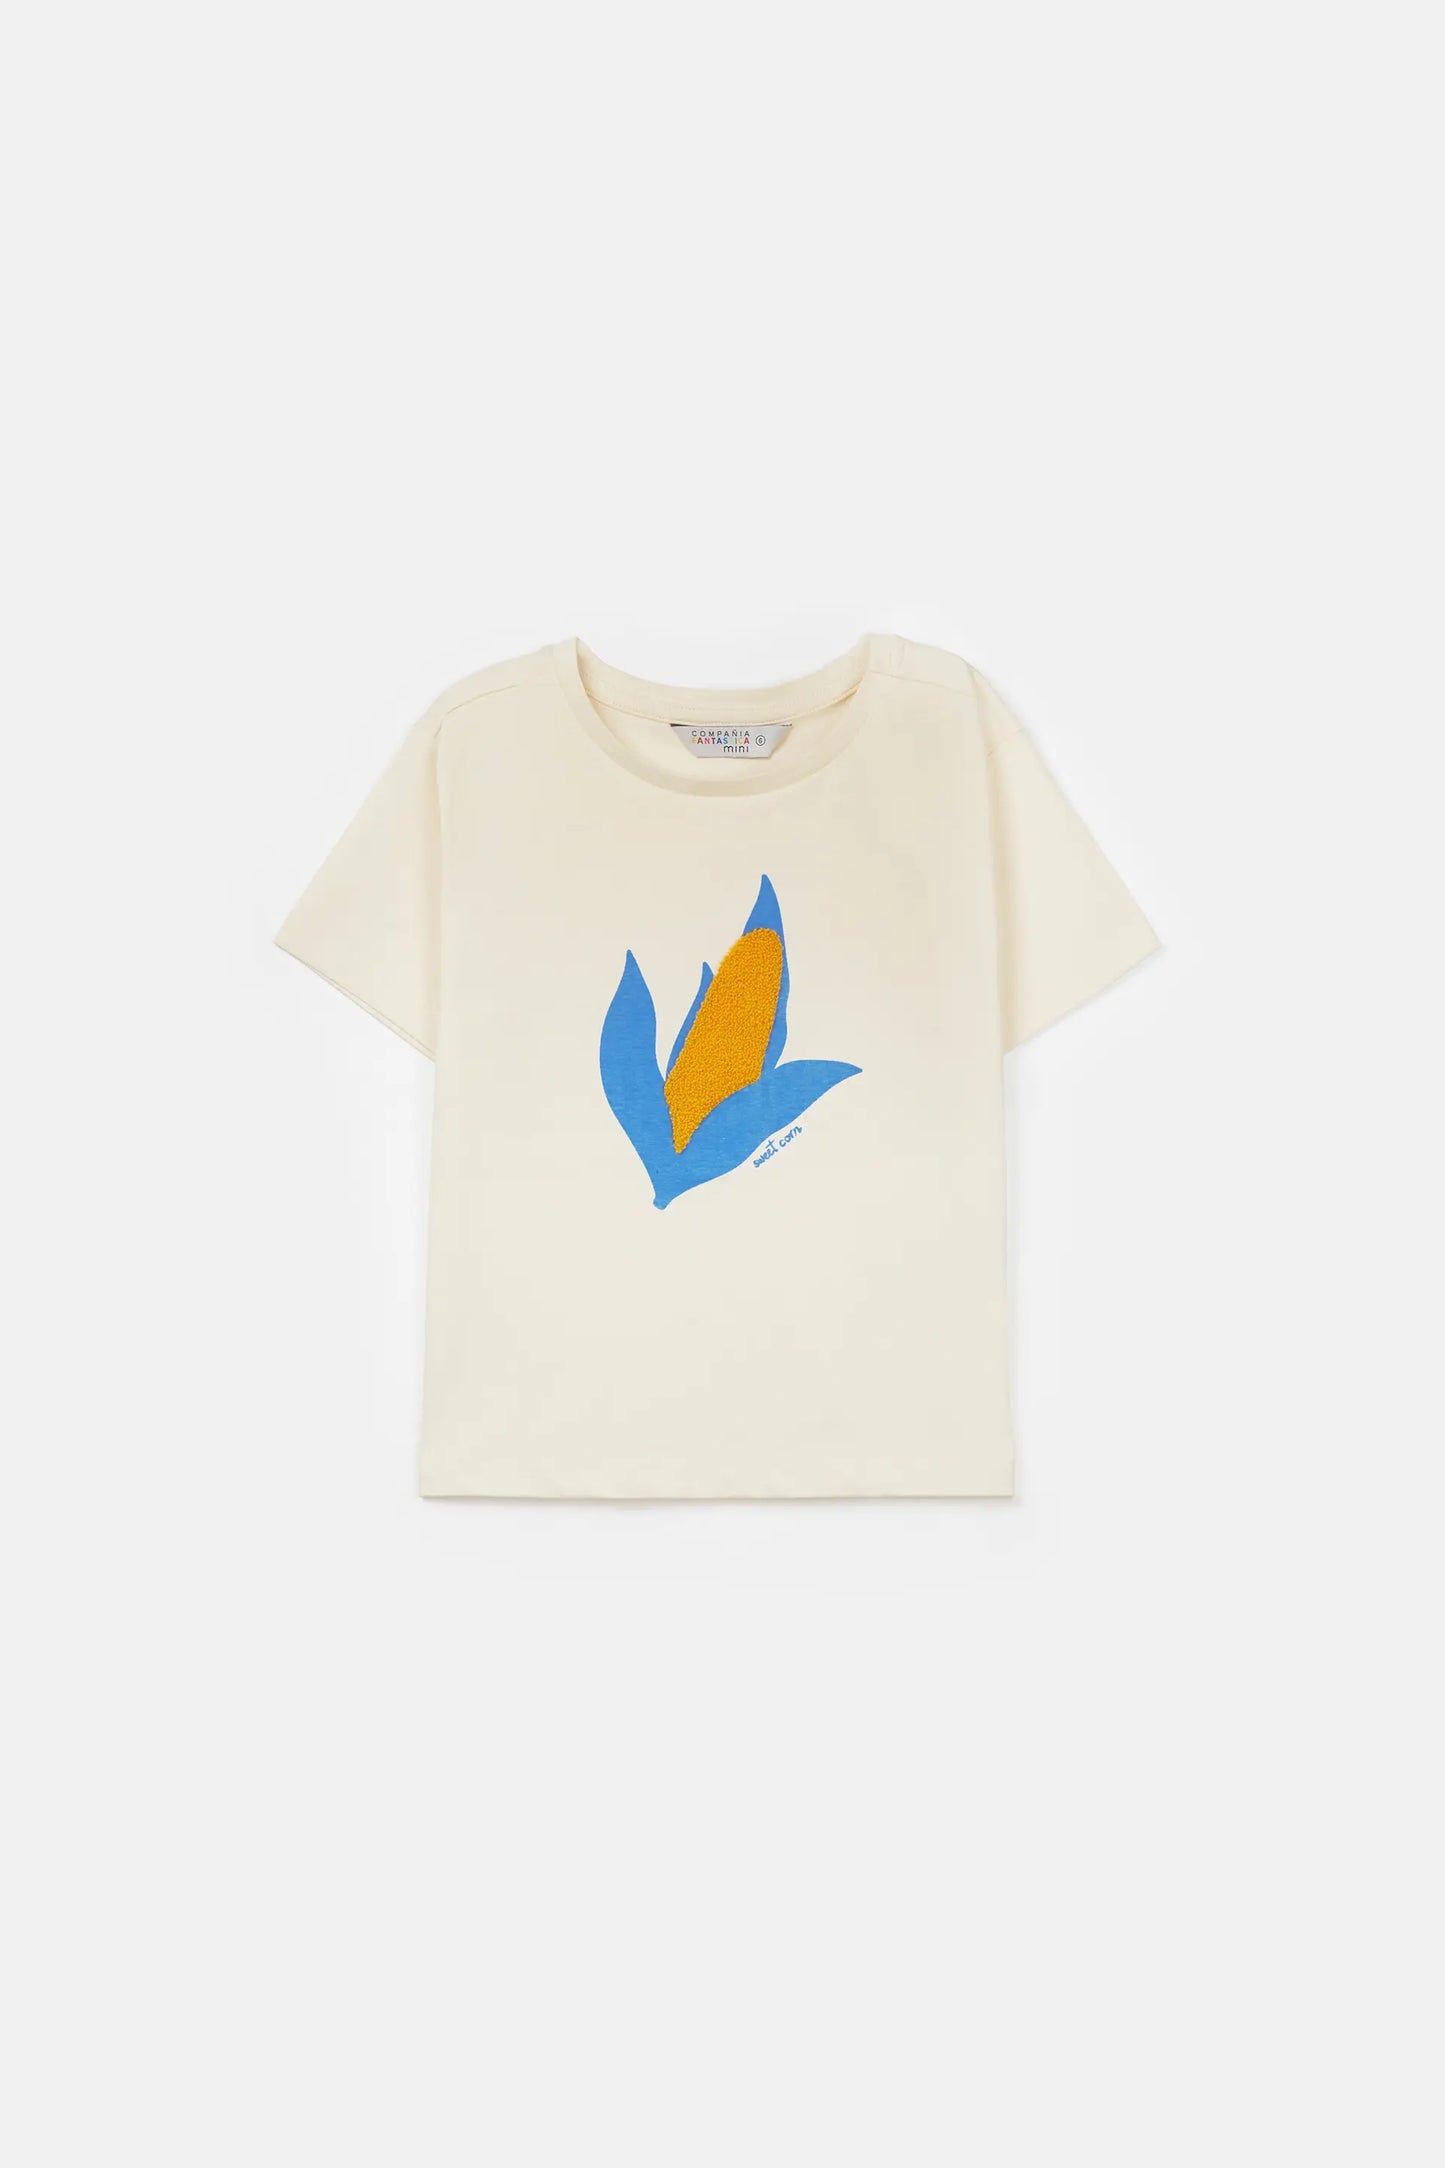 Camiseta unisex de algodón con gráfica de mazorca